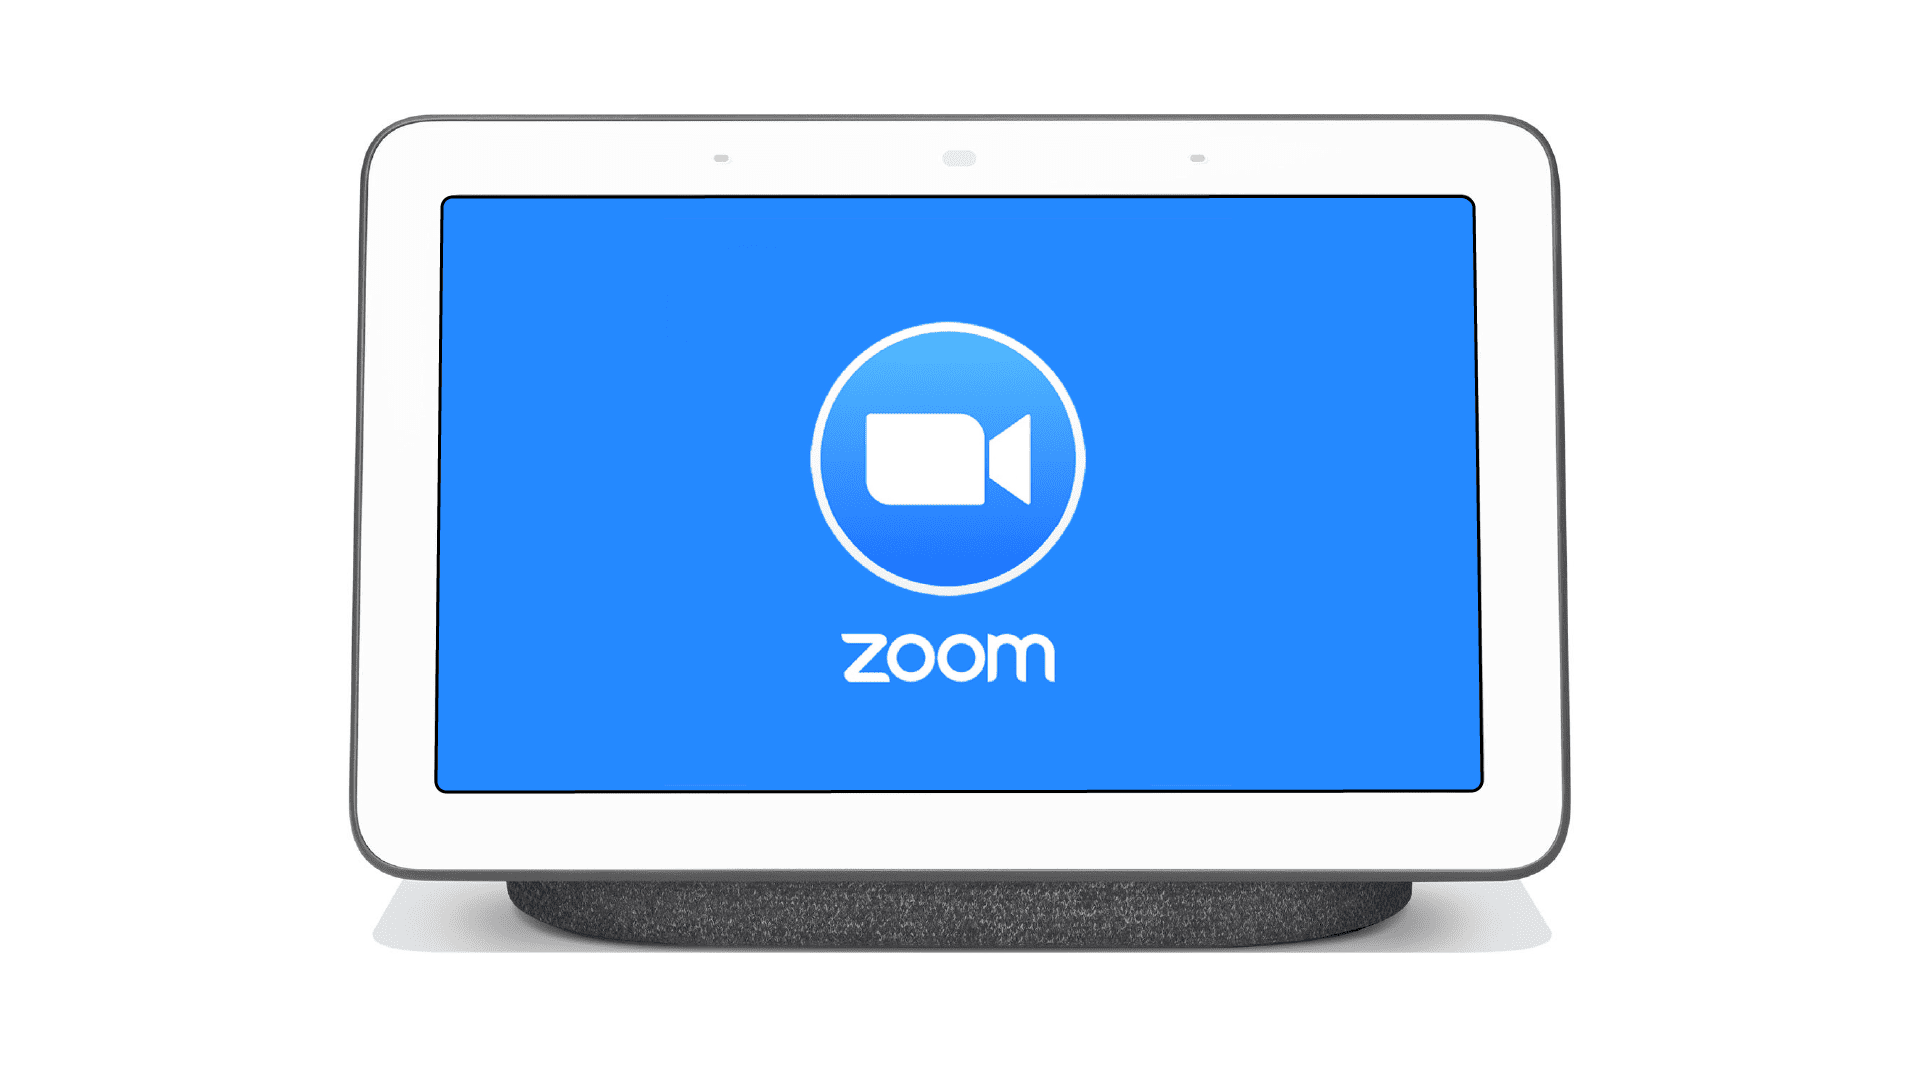 Zoom kommt zu Smart Displays von Amazon, Facebook, und Google später in diesem Jahr 193